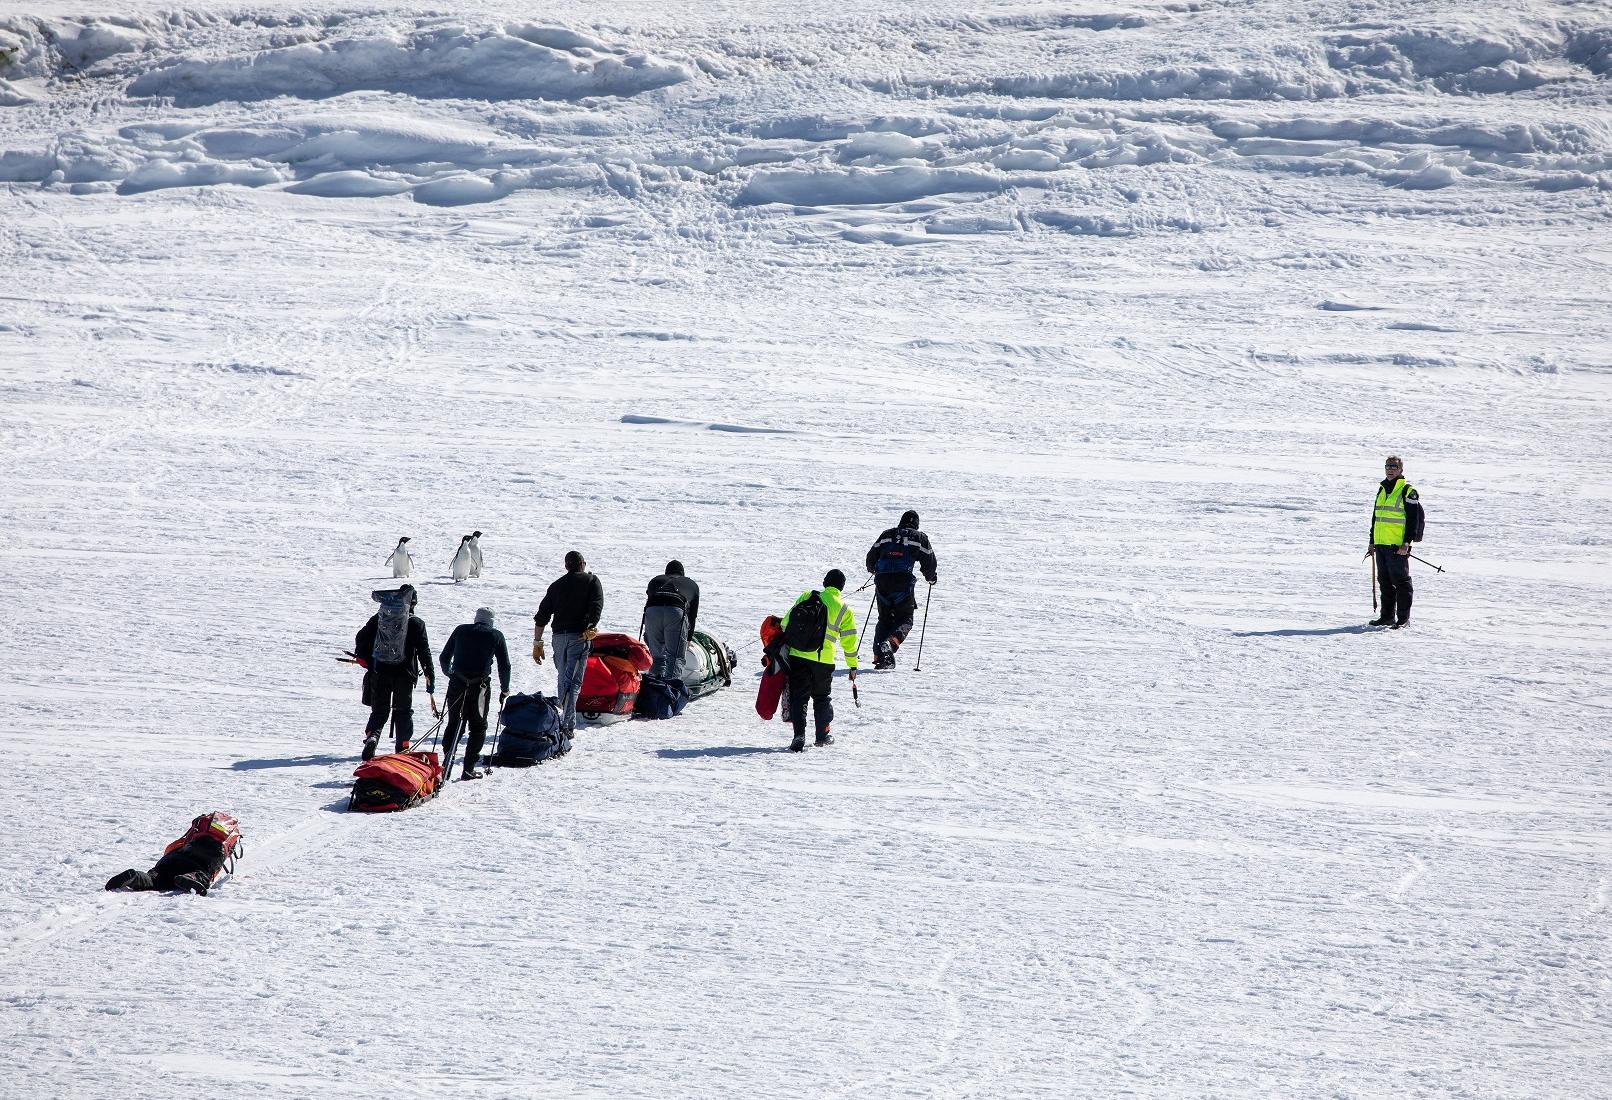  FAZSOI – Le patrouilleur polaire L’Astrolabe conduit un exercice de survie en Antarctique